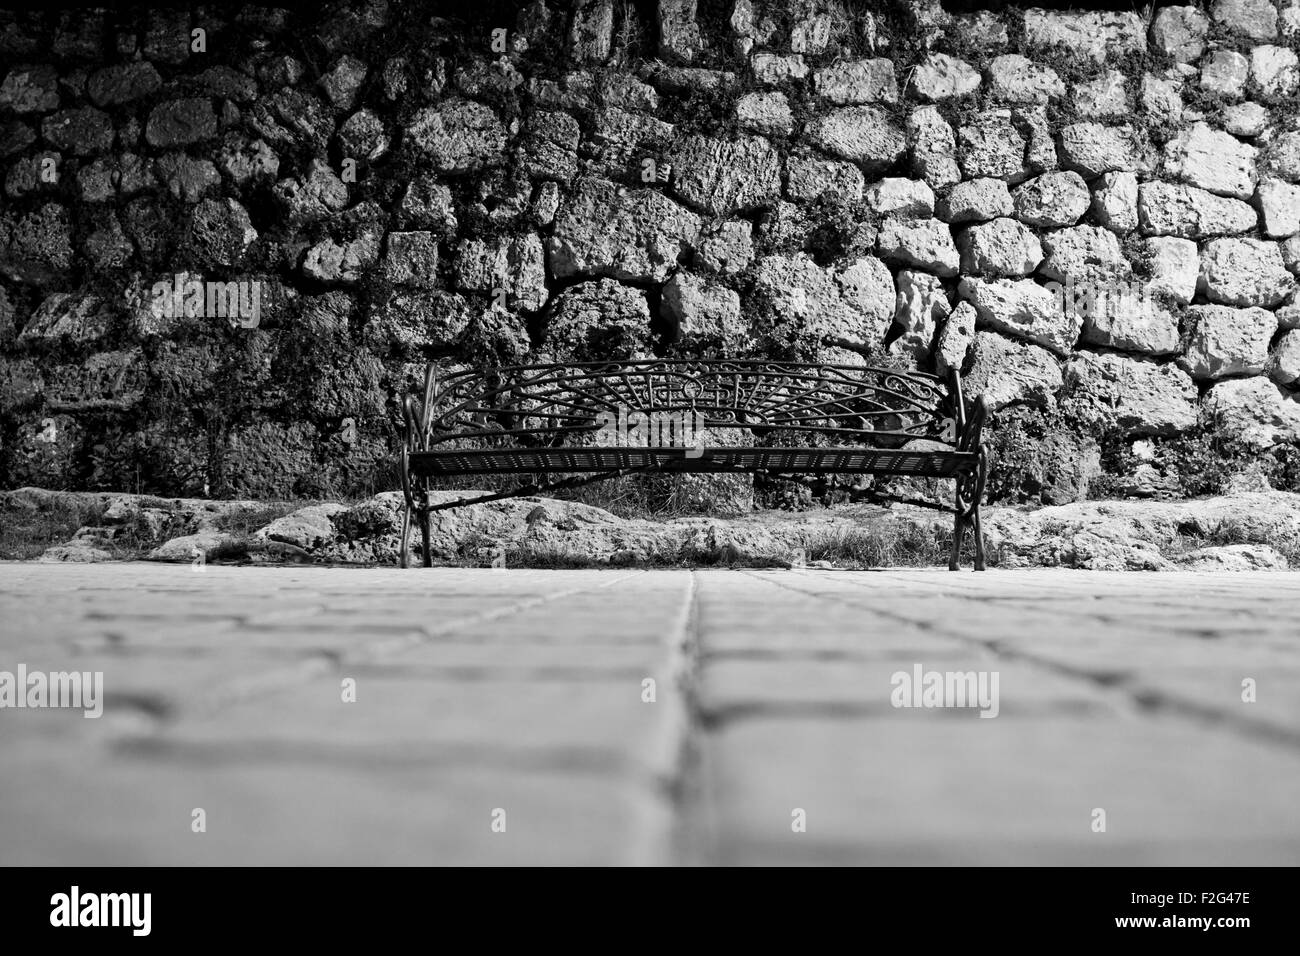 Immagine in bianco e nero di ferro battuto panchina dal livello del suolo con parete lapideo in background Foto Stock